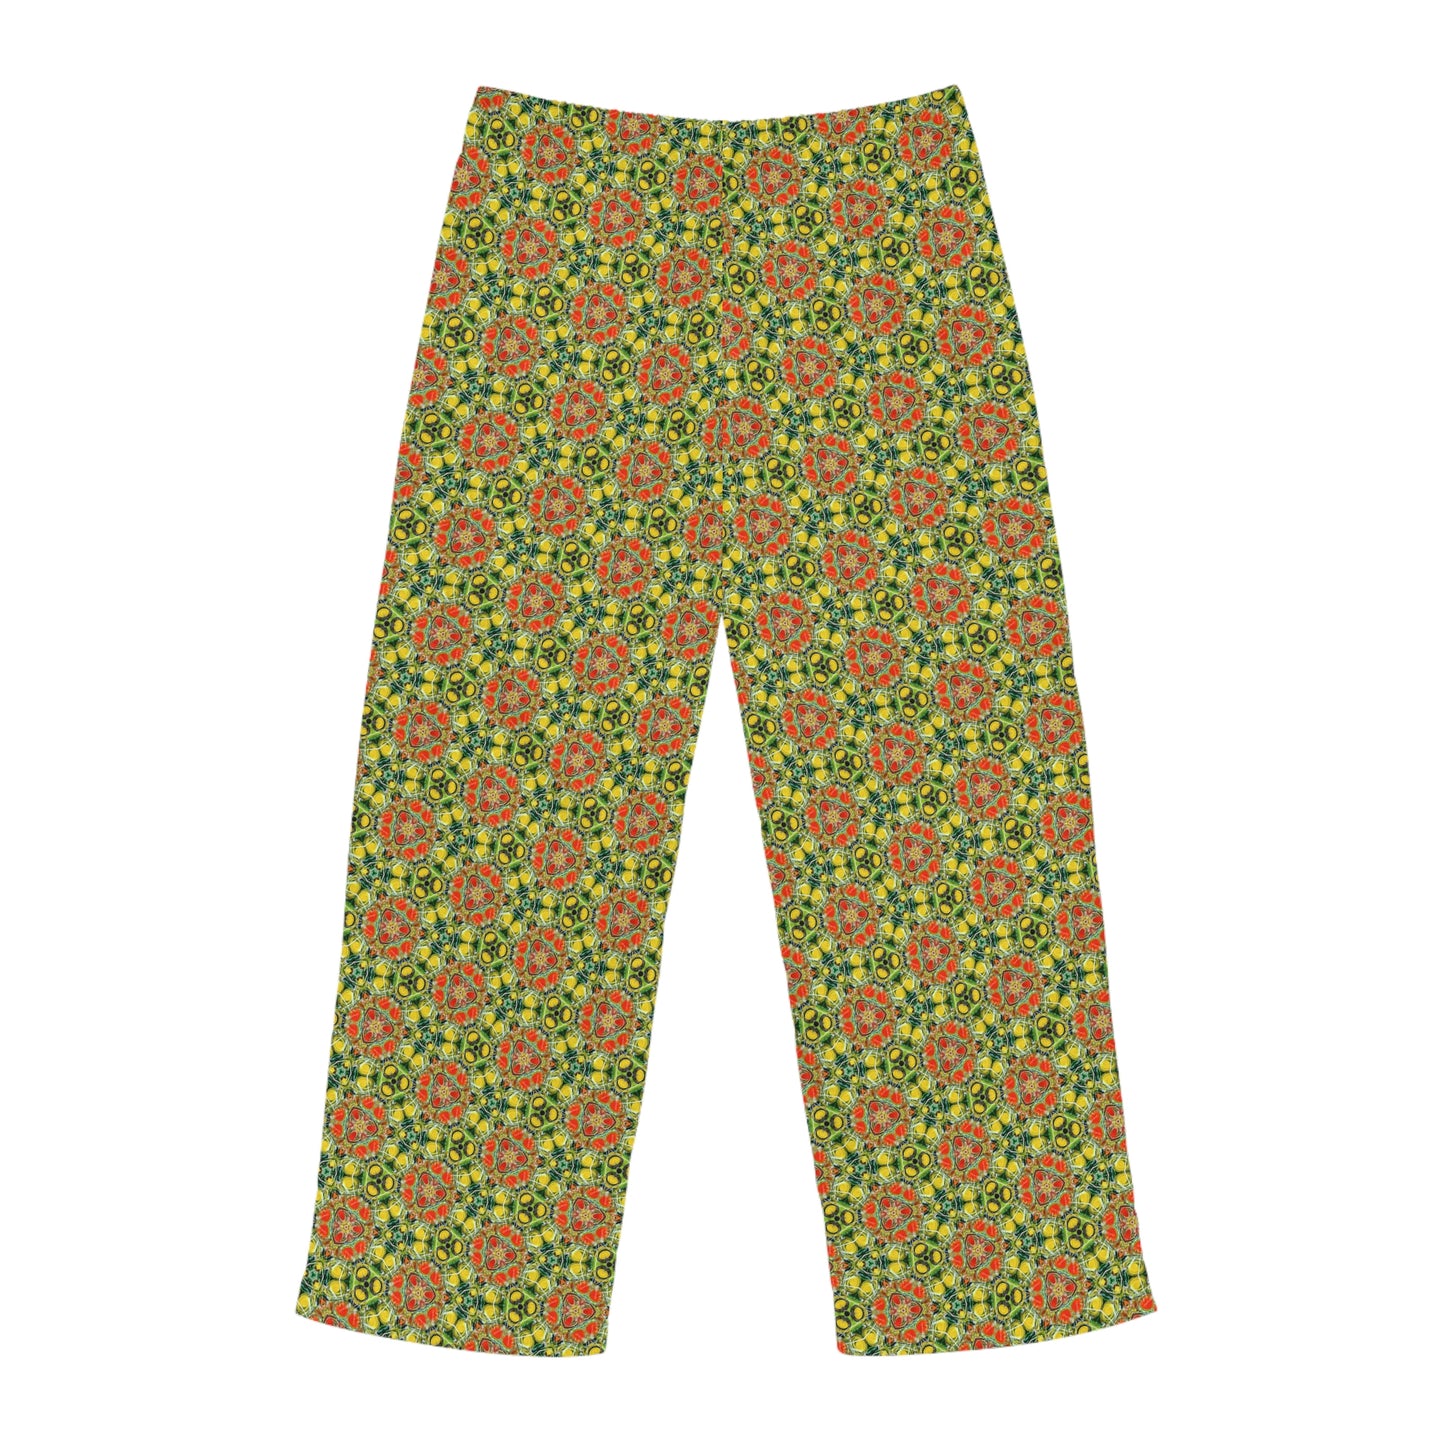 Psychedelic Garden Men's Pajama Pants